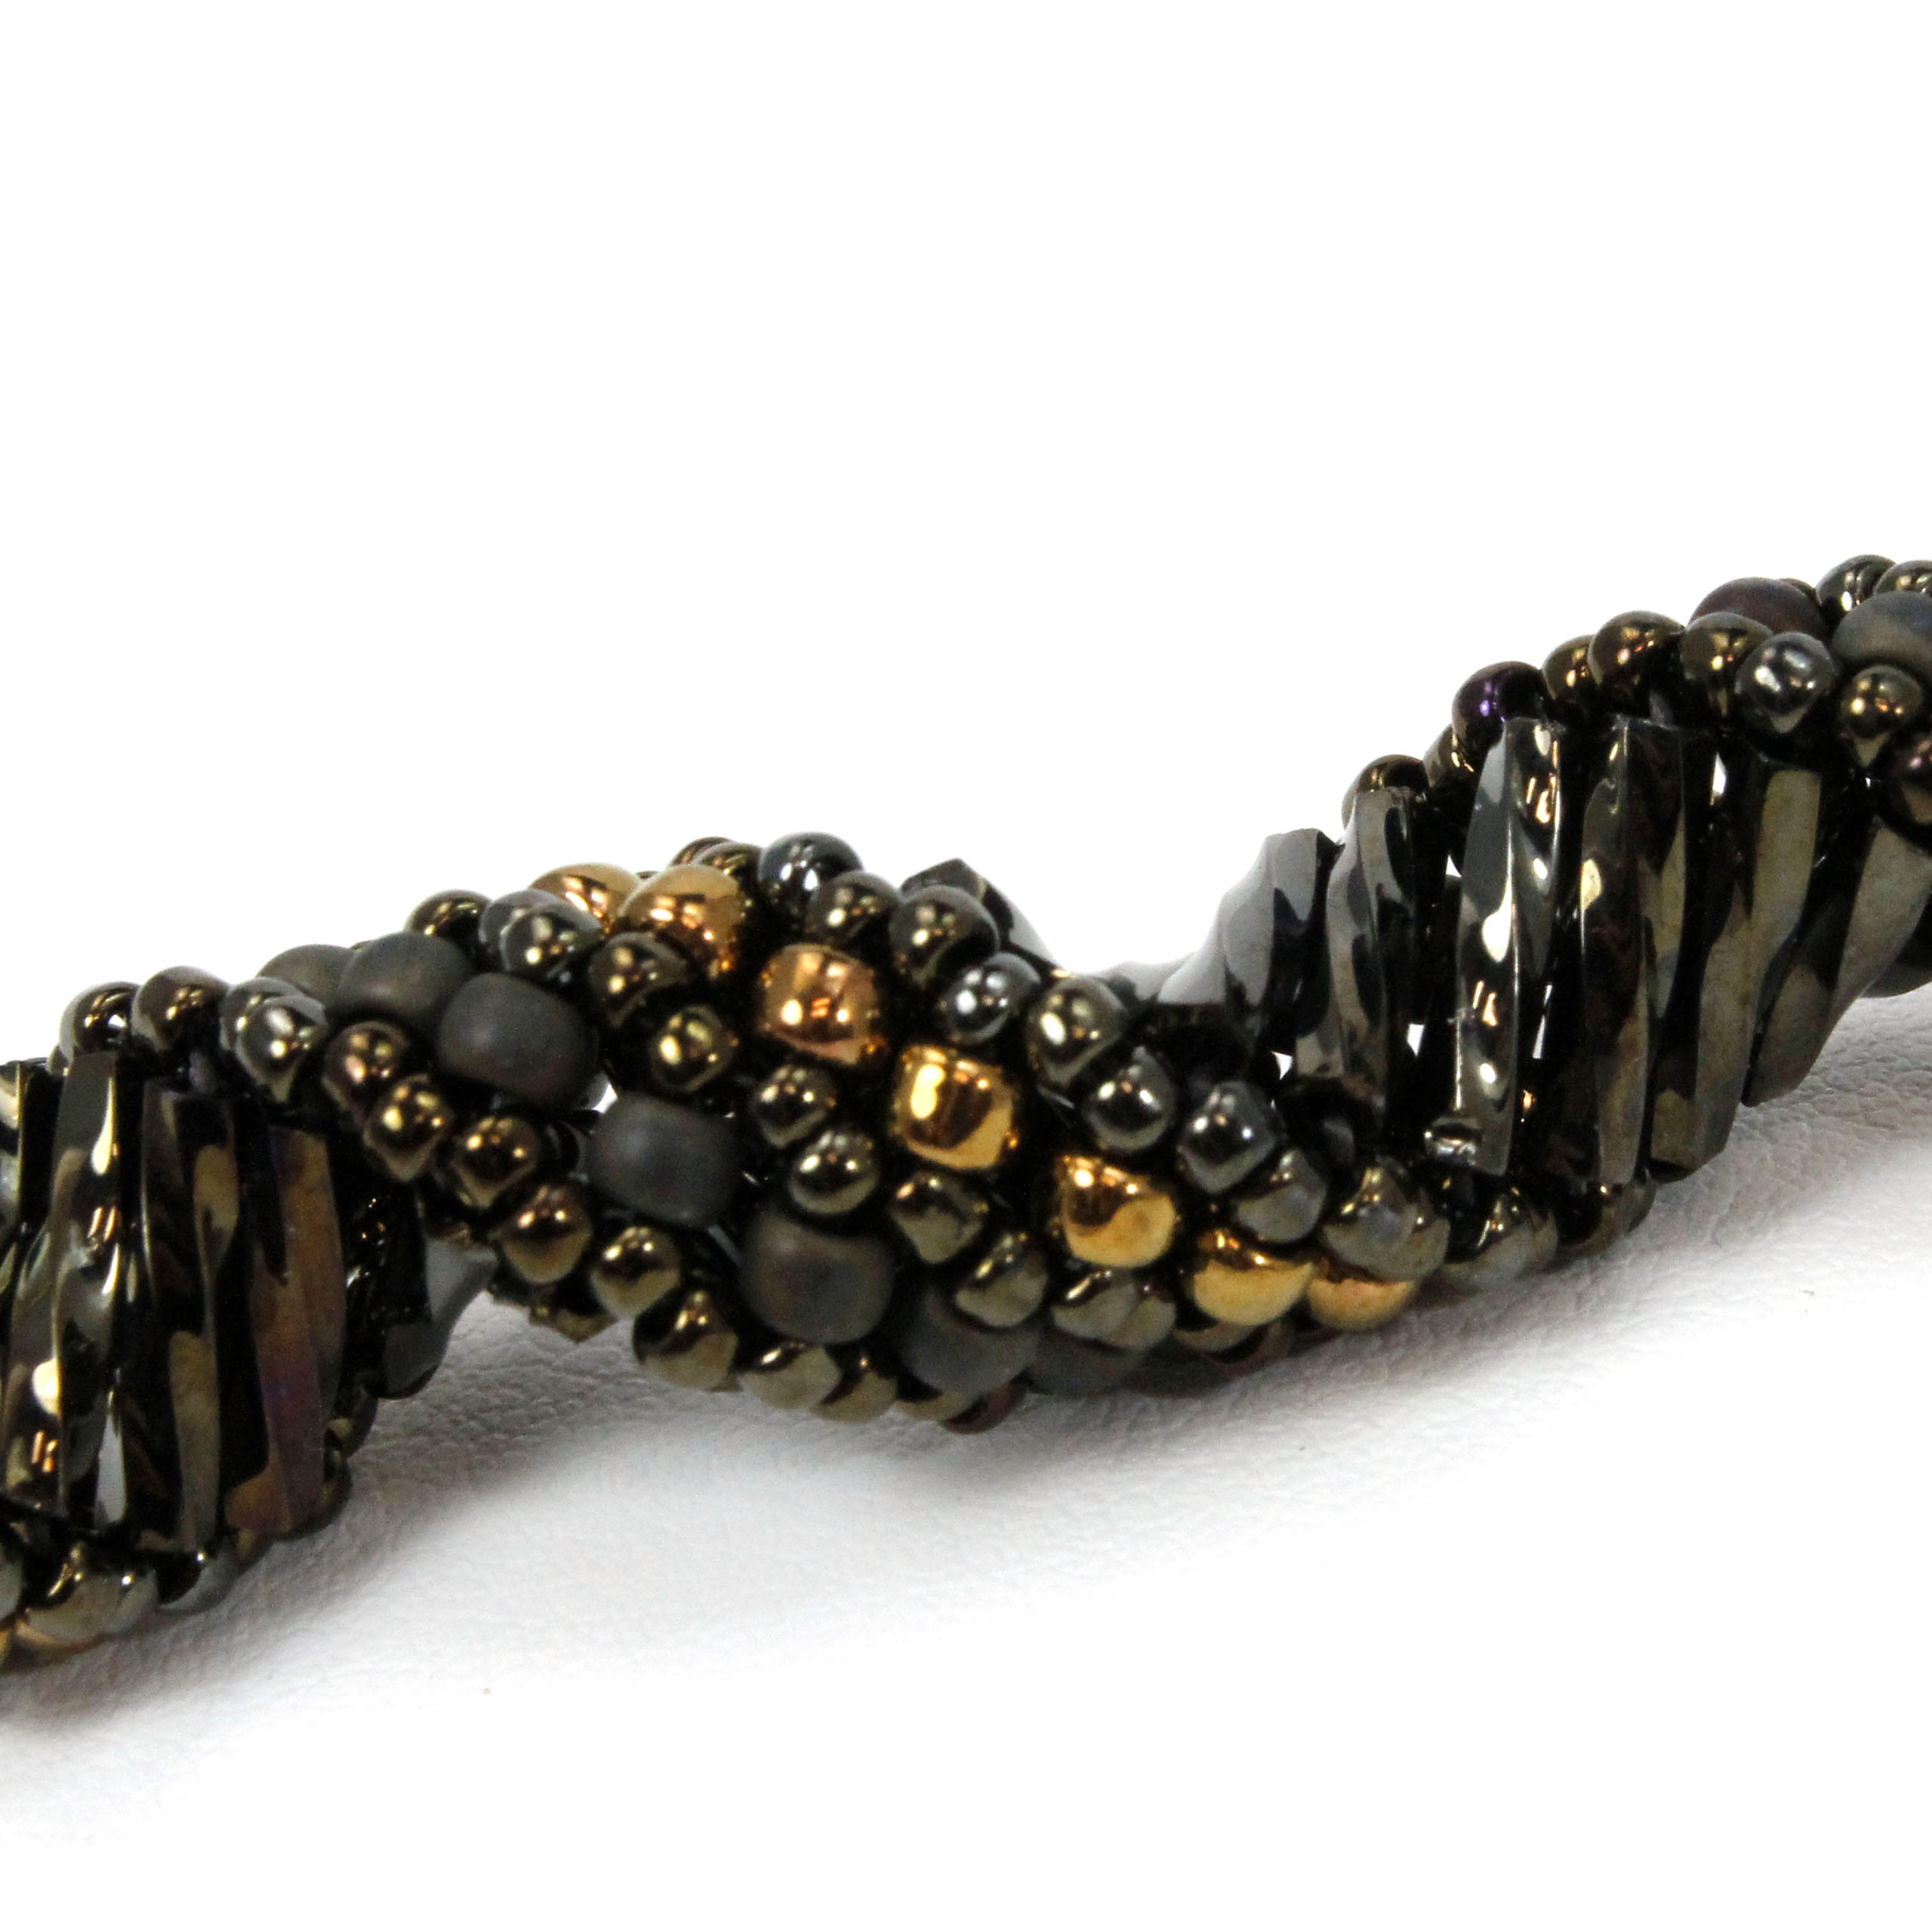 Russian Spiral 3 Bracelet Bead Pack - Iris